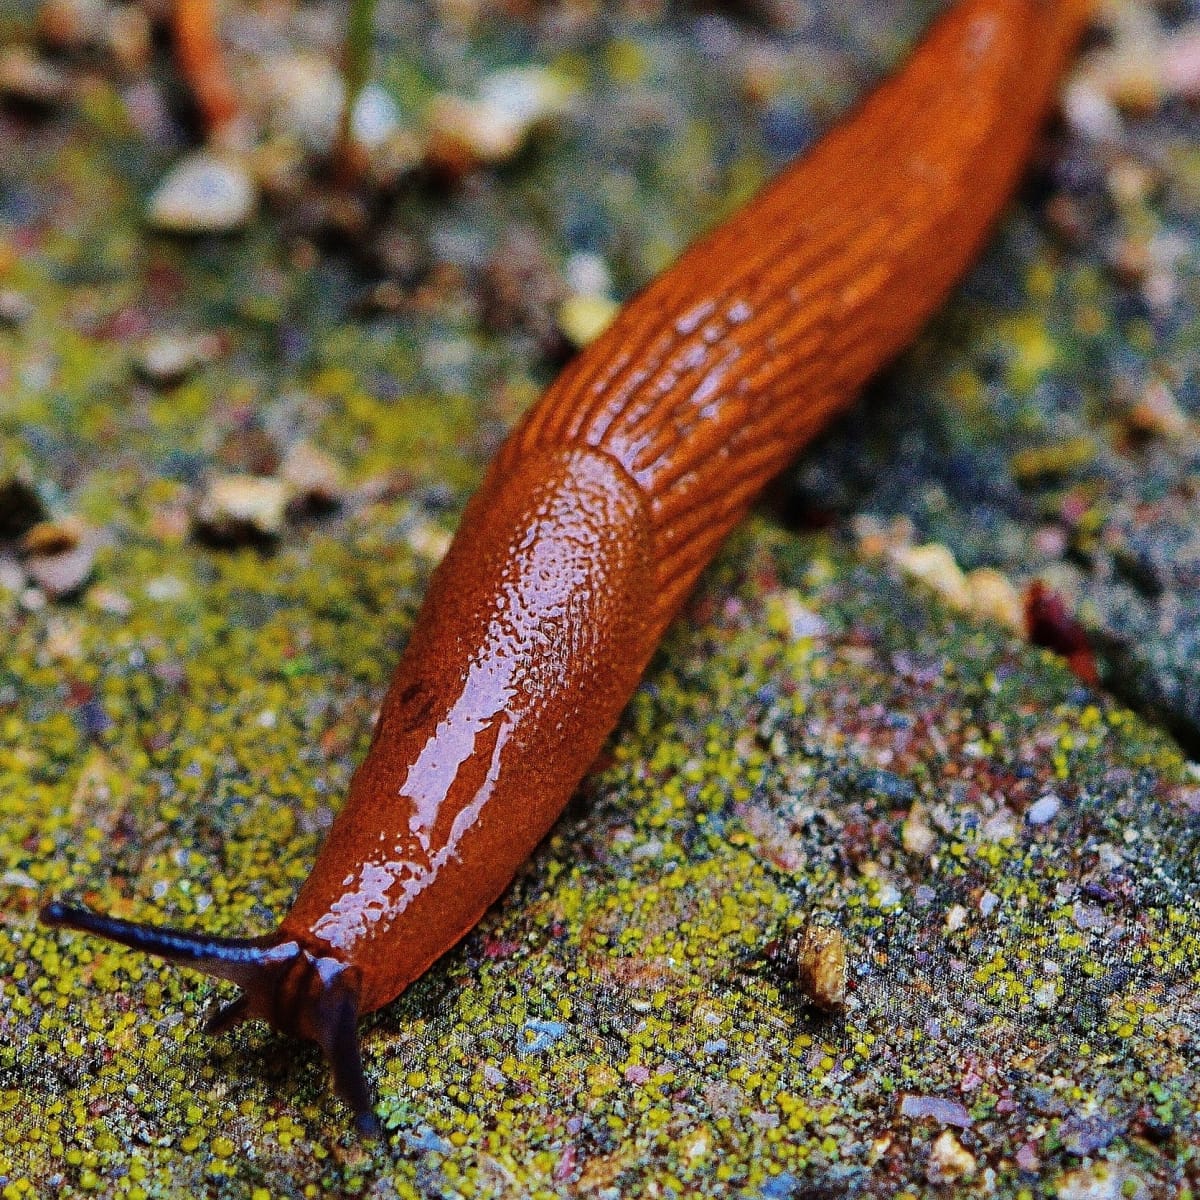 common garden slug